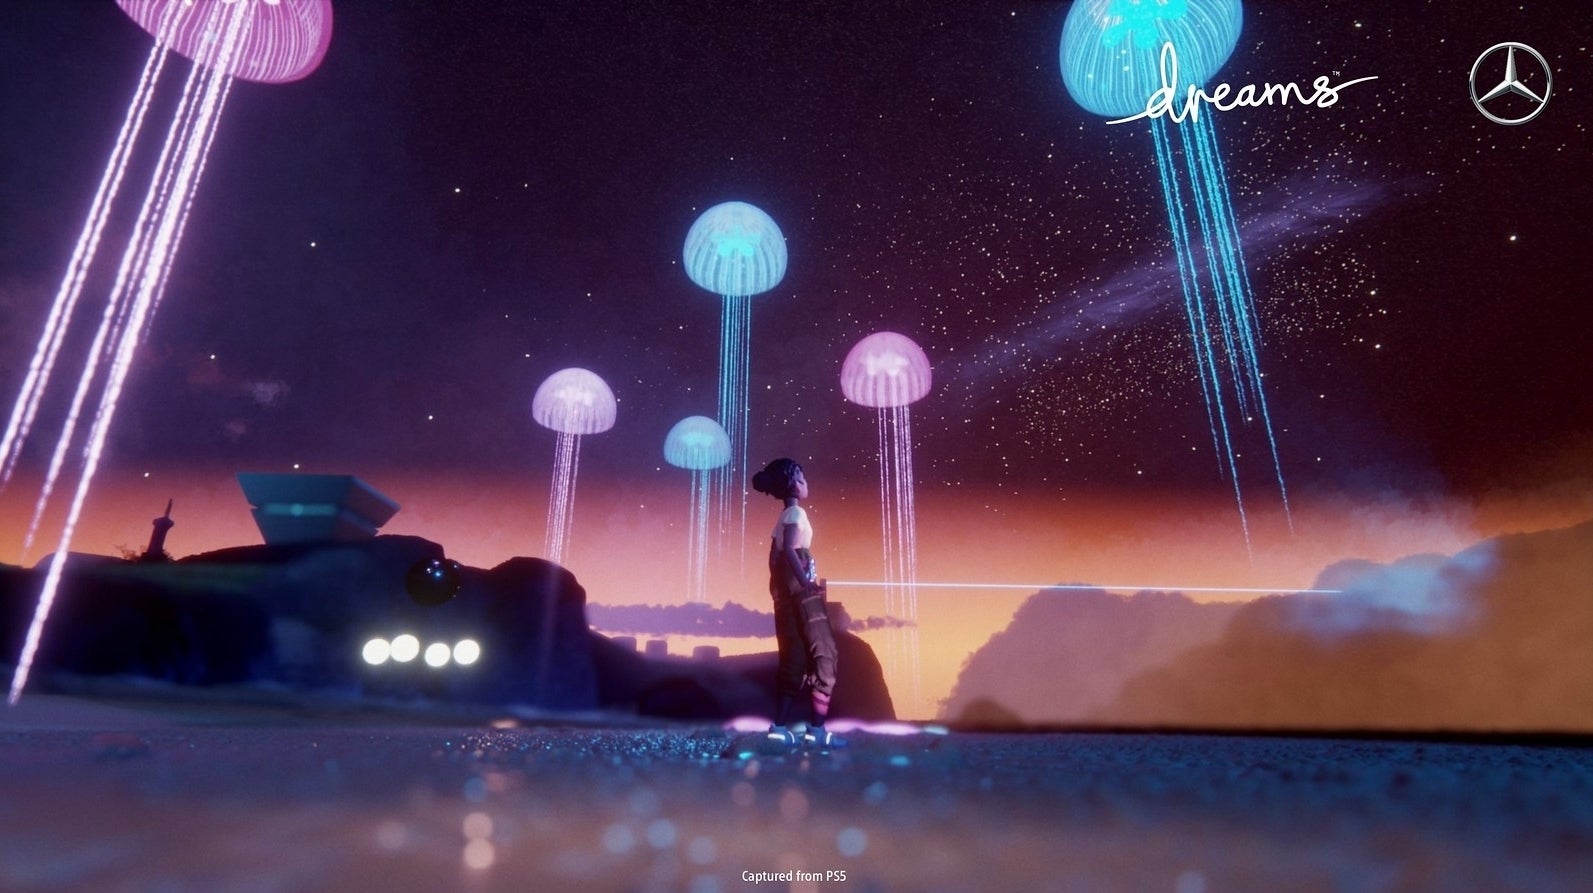 Immagine di Dreams e Mercedes collaborano creando un videogioco ambientato in un'utopia nel 2078